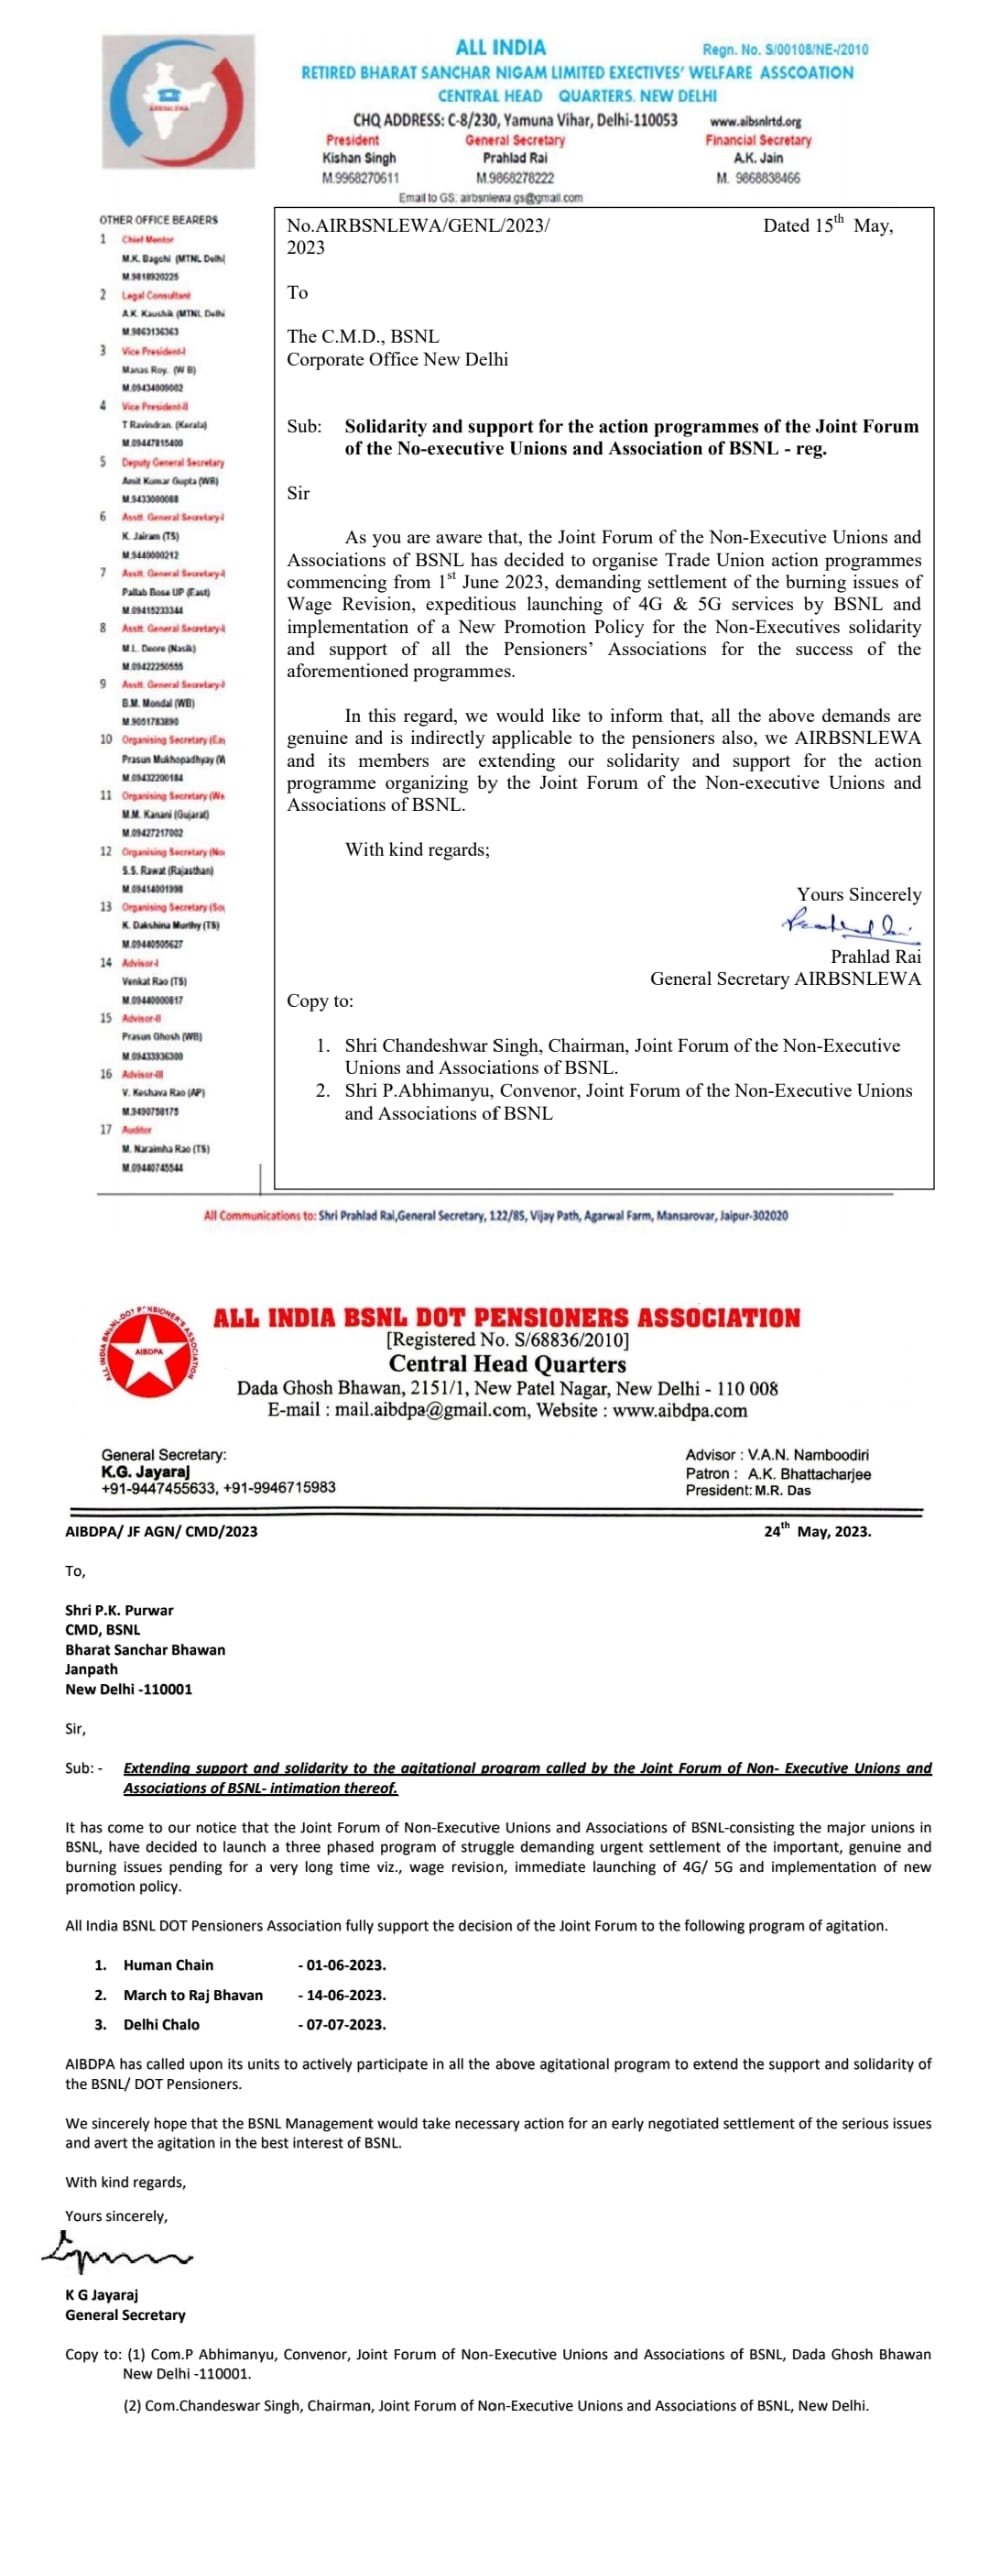 *निवृत्तीवेतनधारक संघटनांनी CMD BSNL यांना पत्र लिहून संयुक्त मंचाच्या आंदोलनात्मक कार्यक्रमांना पाठिंबा दर्शवला आहे.* Image 